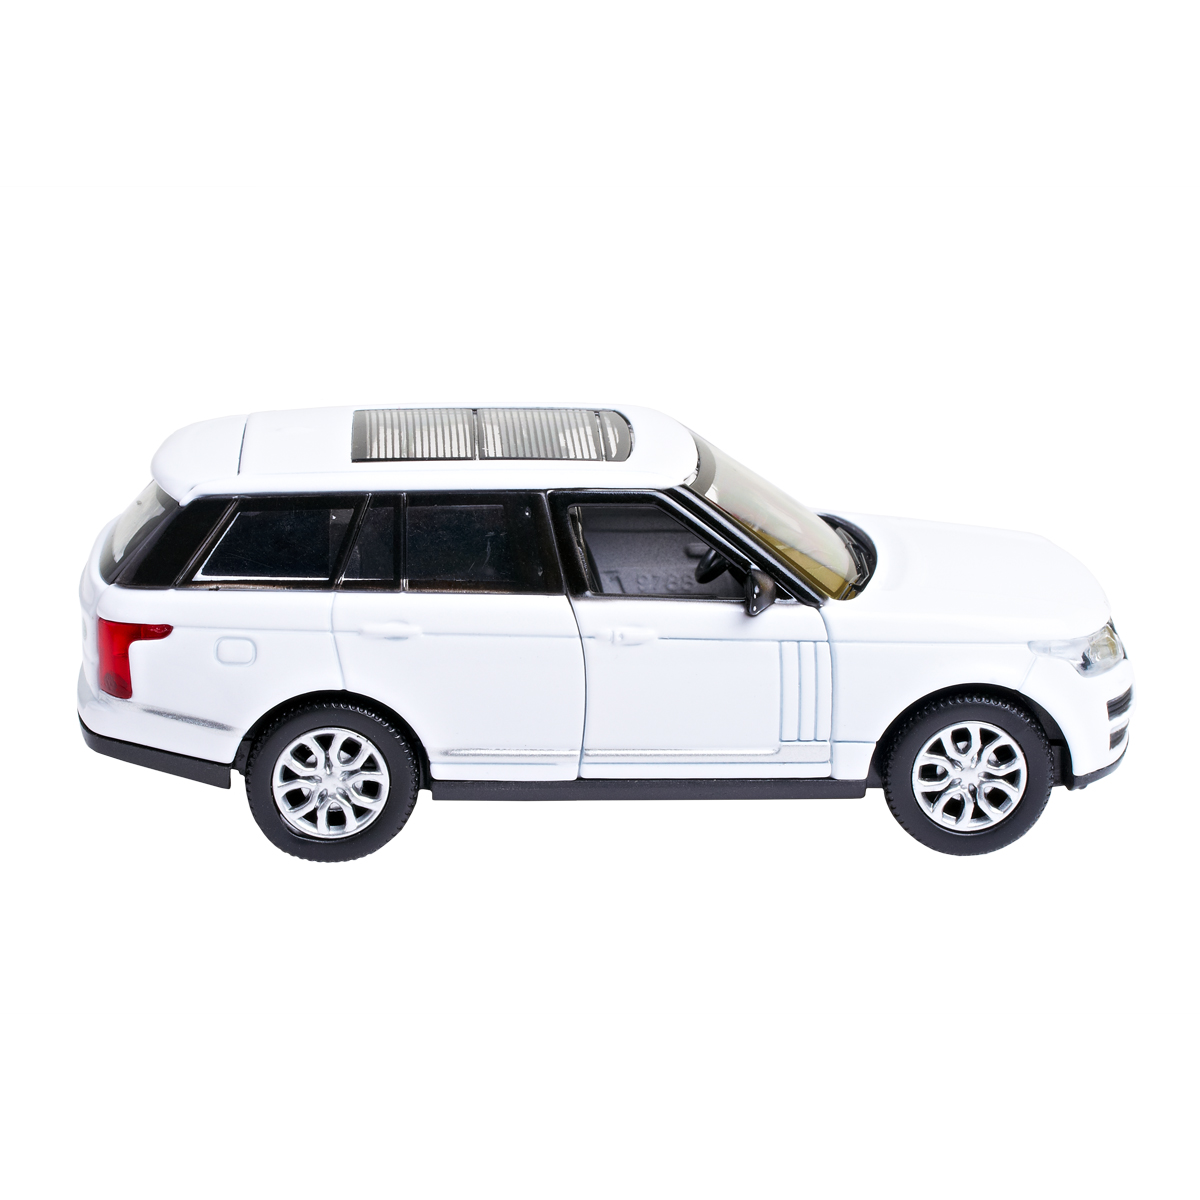 Автомодель Technopark Range Rover Vogue, 1:32, білий (VOGUE-WT) - фото 3